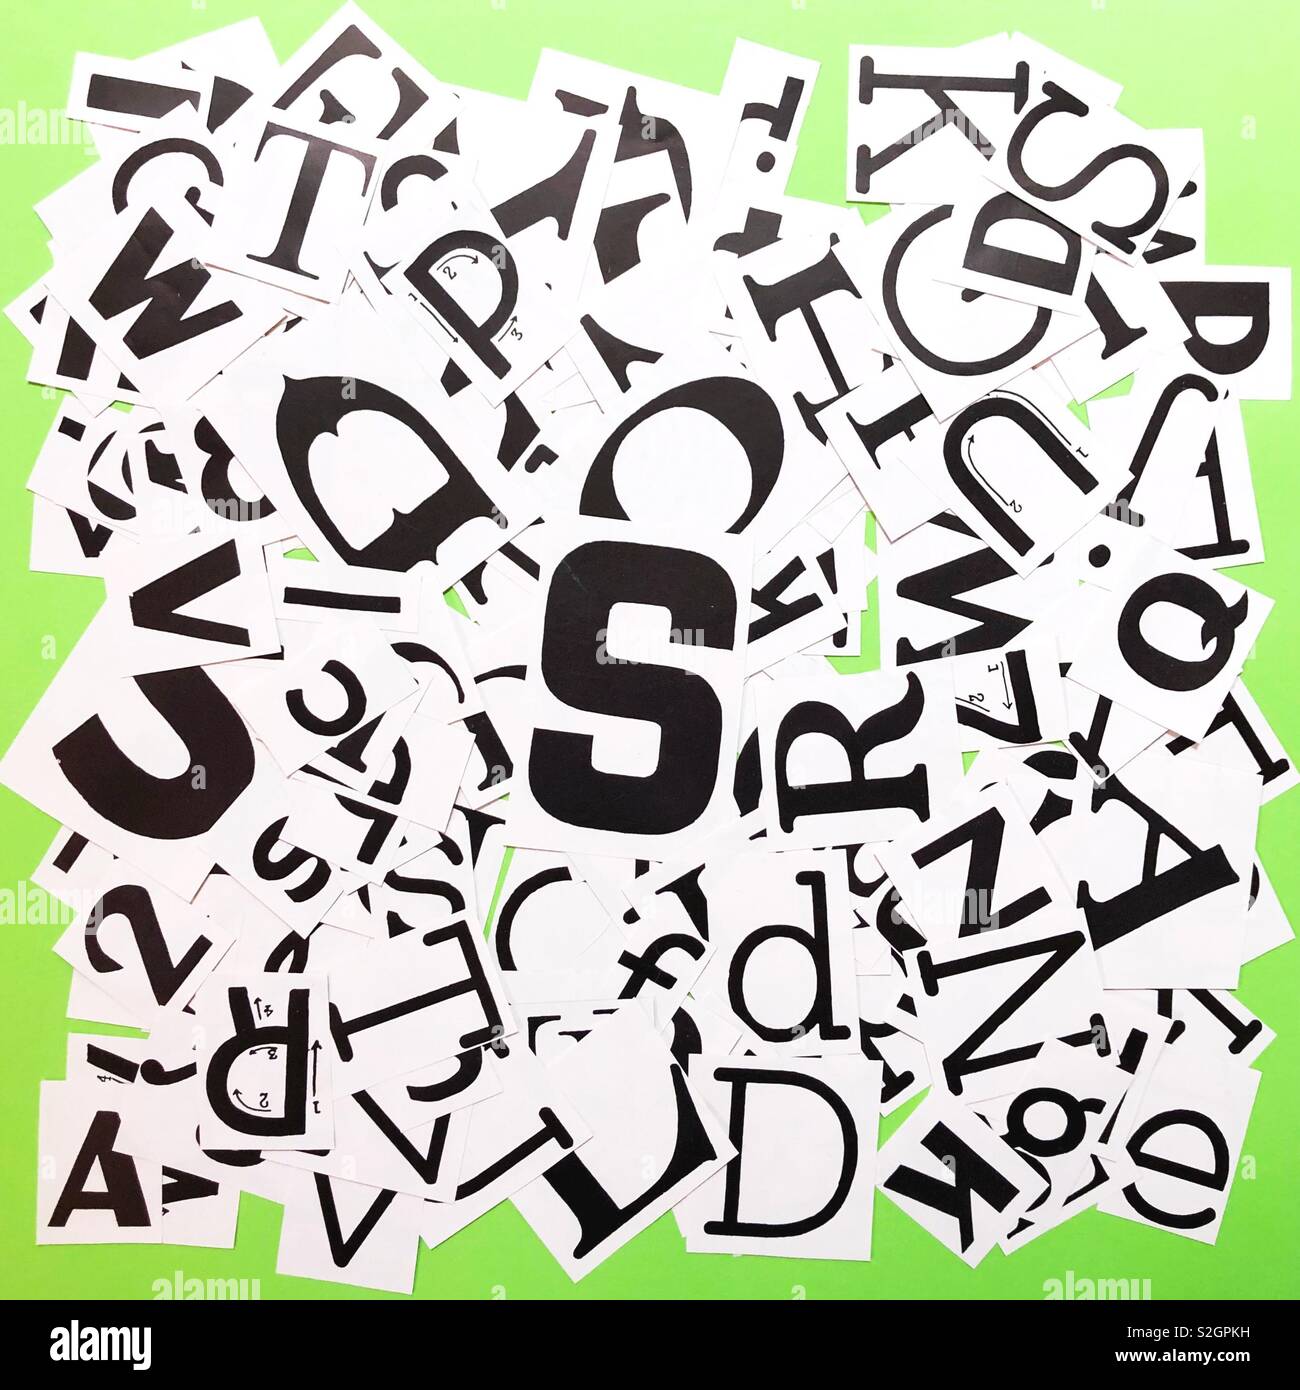 Ein Haufen von ausgeschnittenen Buchstaben in verschiedenen Schriftarten und -größen. Stockfoto